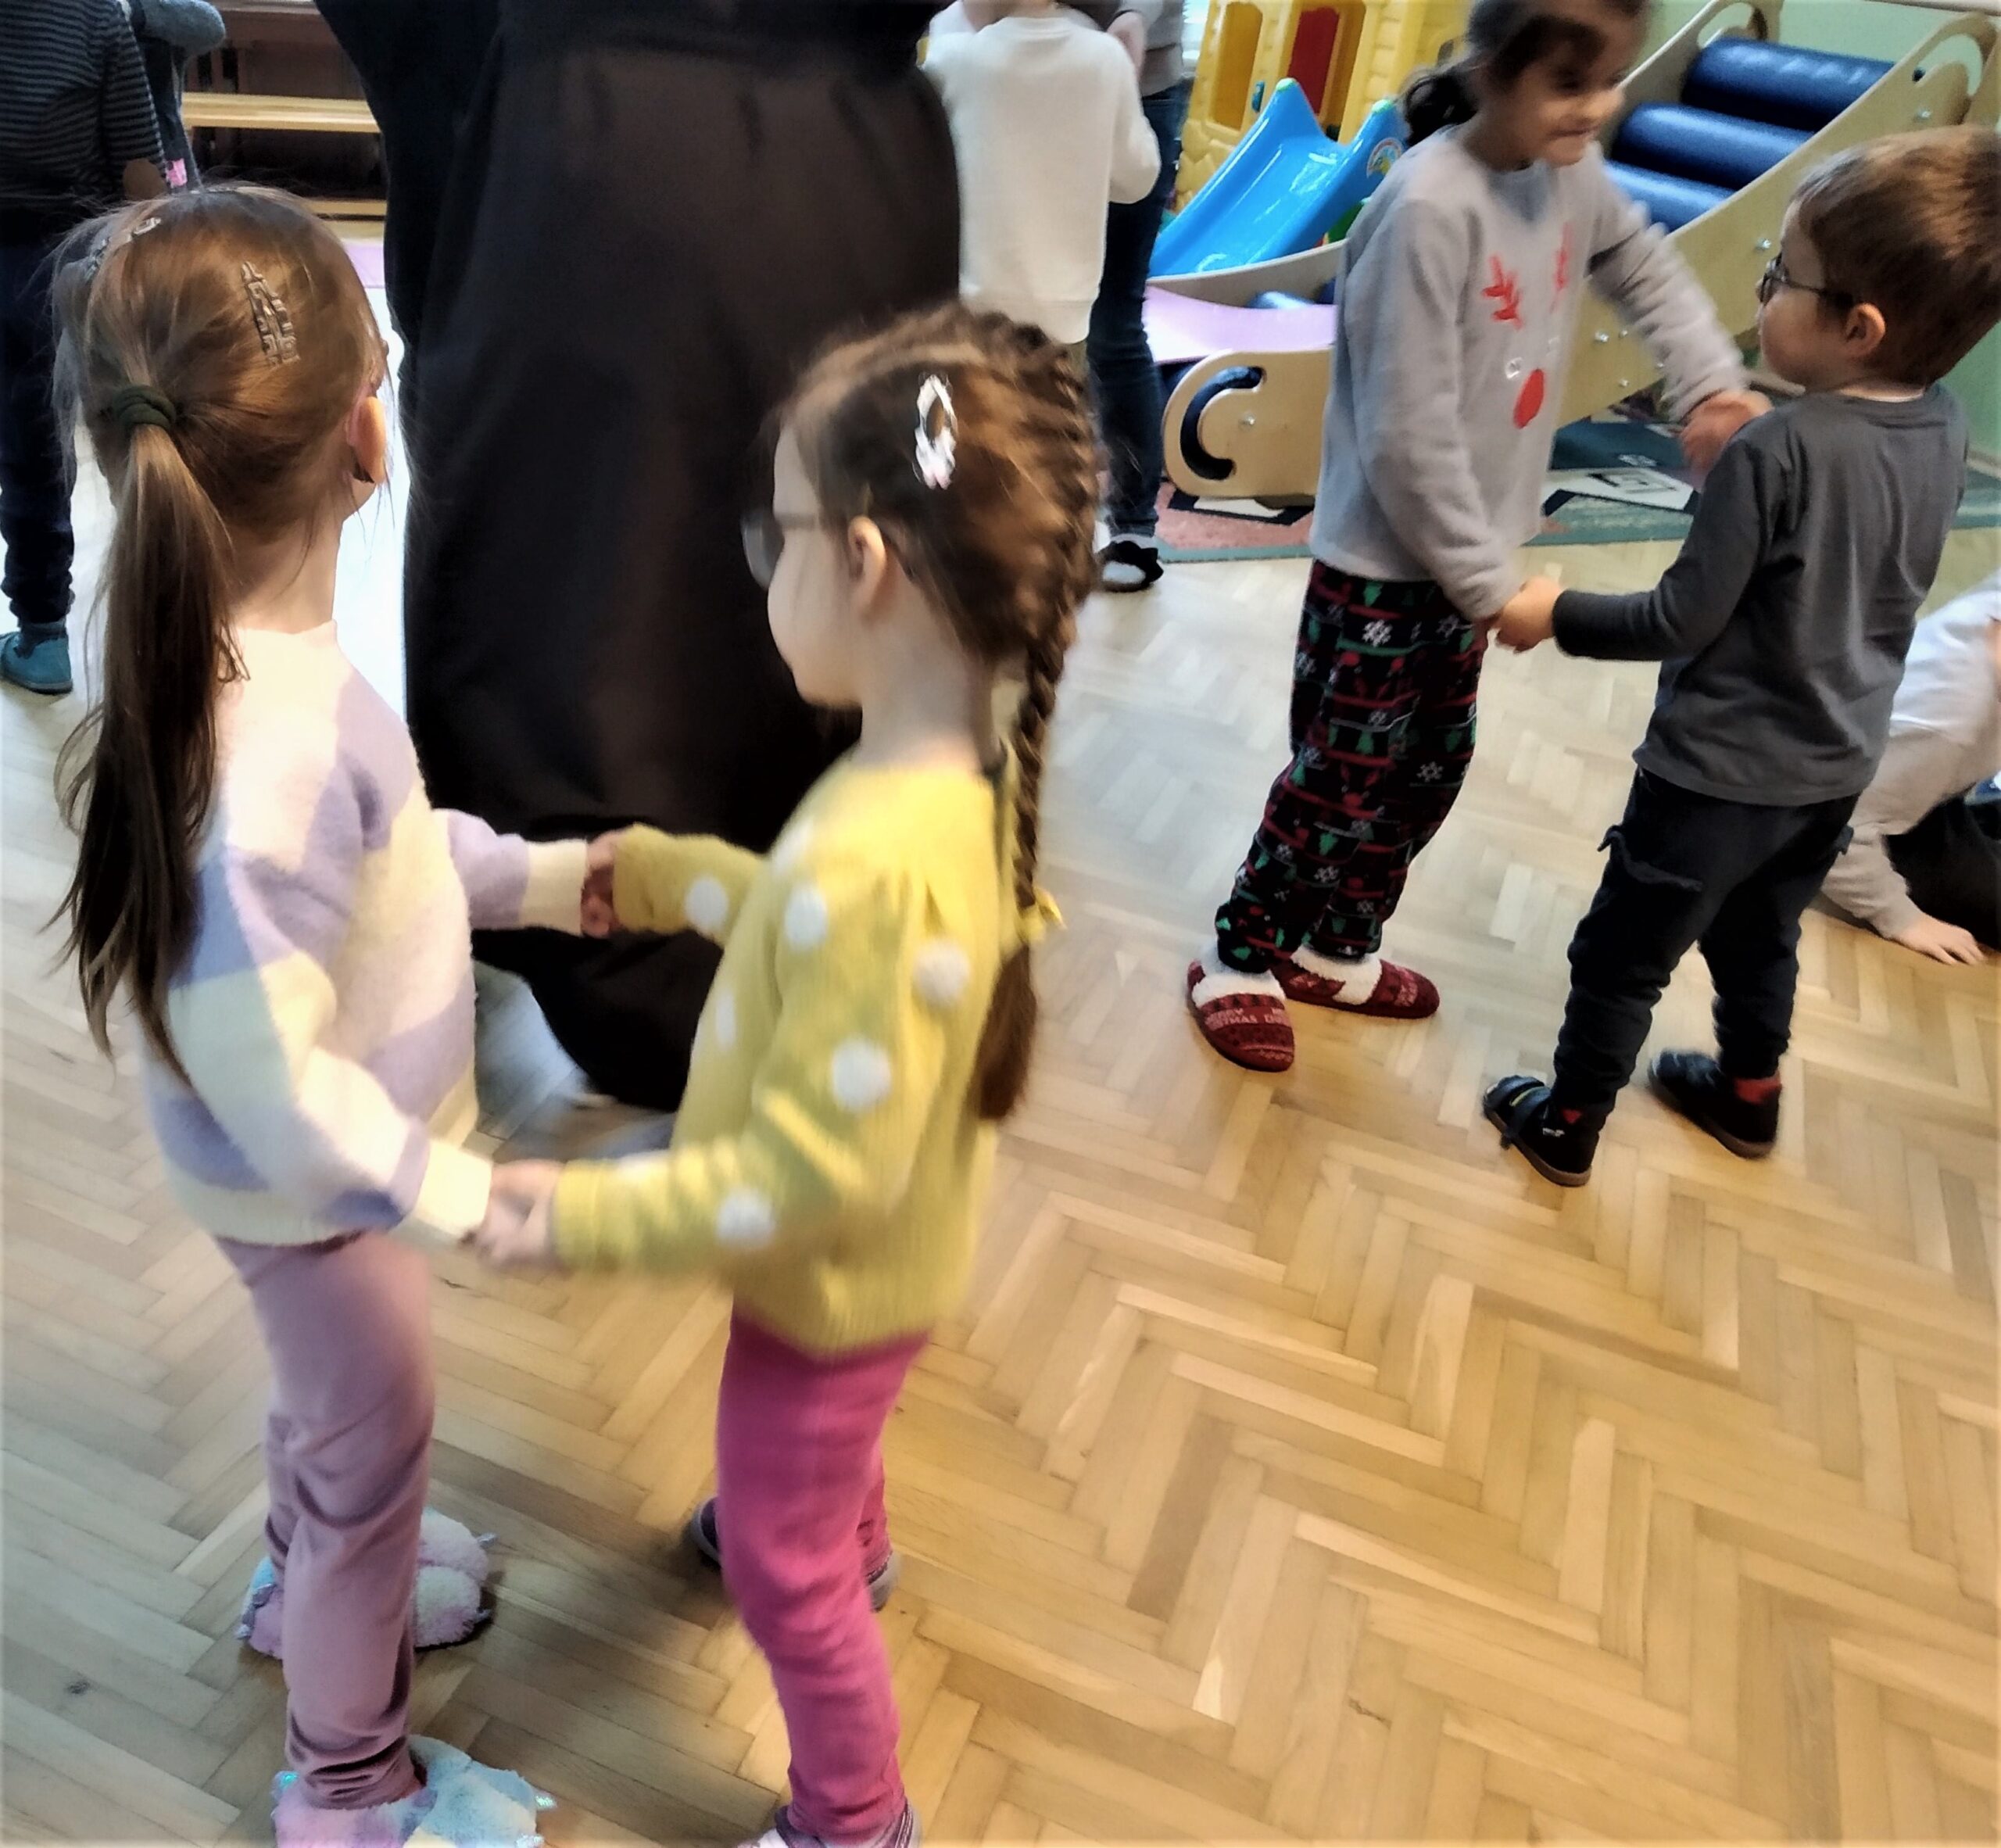 Dzieci tańczą w parach w rytm muzyki